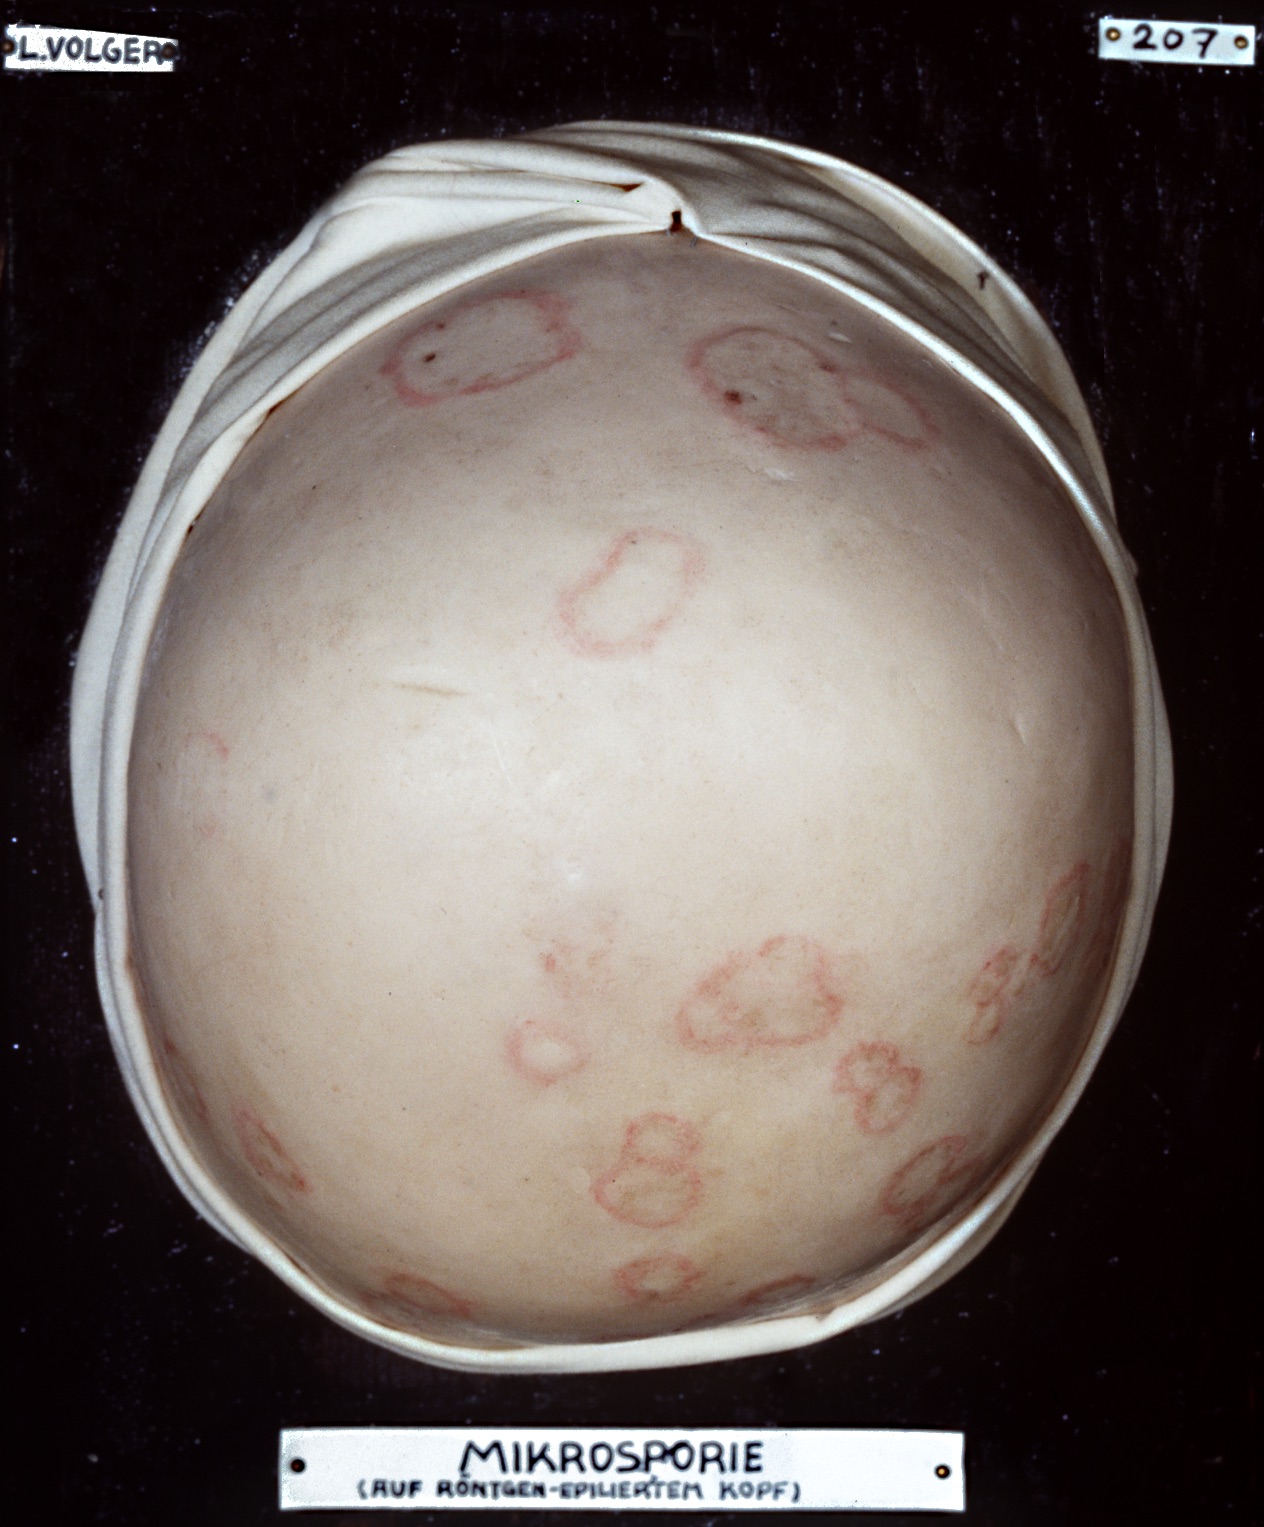 Röntgenepilierter Kopf eines Jugendlichen mit einer Pilzinfektion (Mikrosporie)